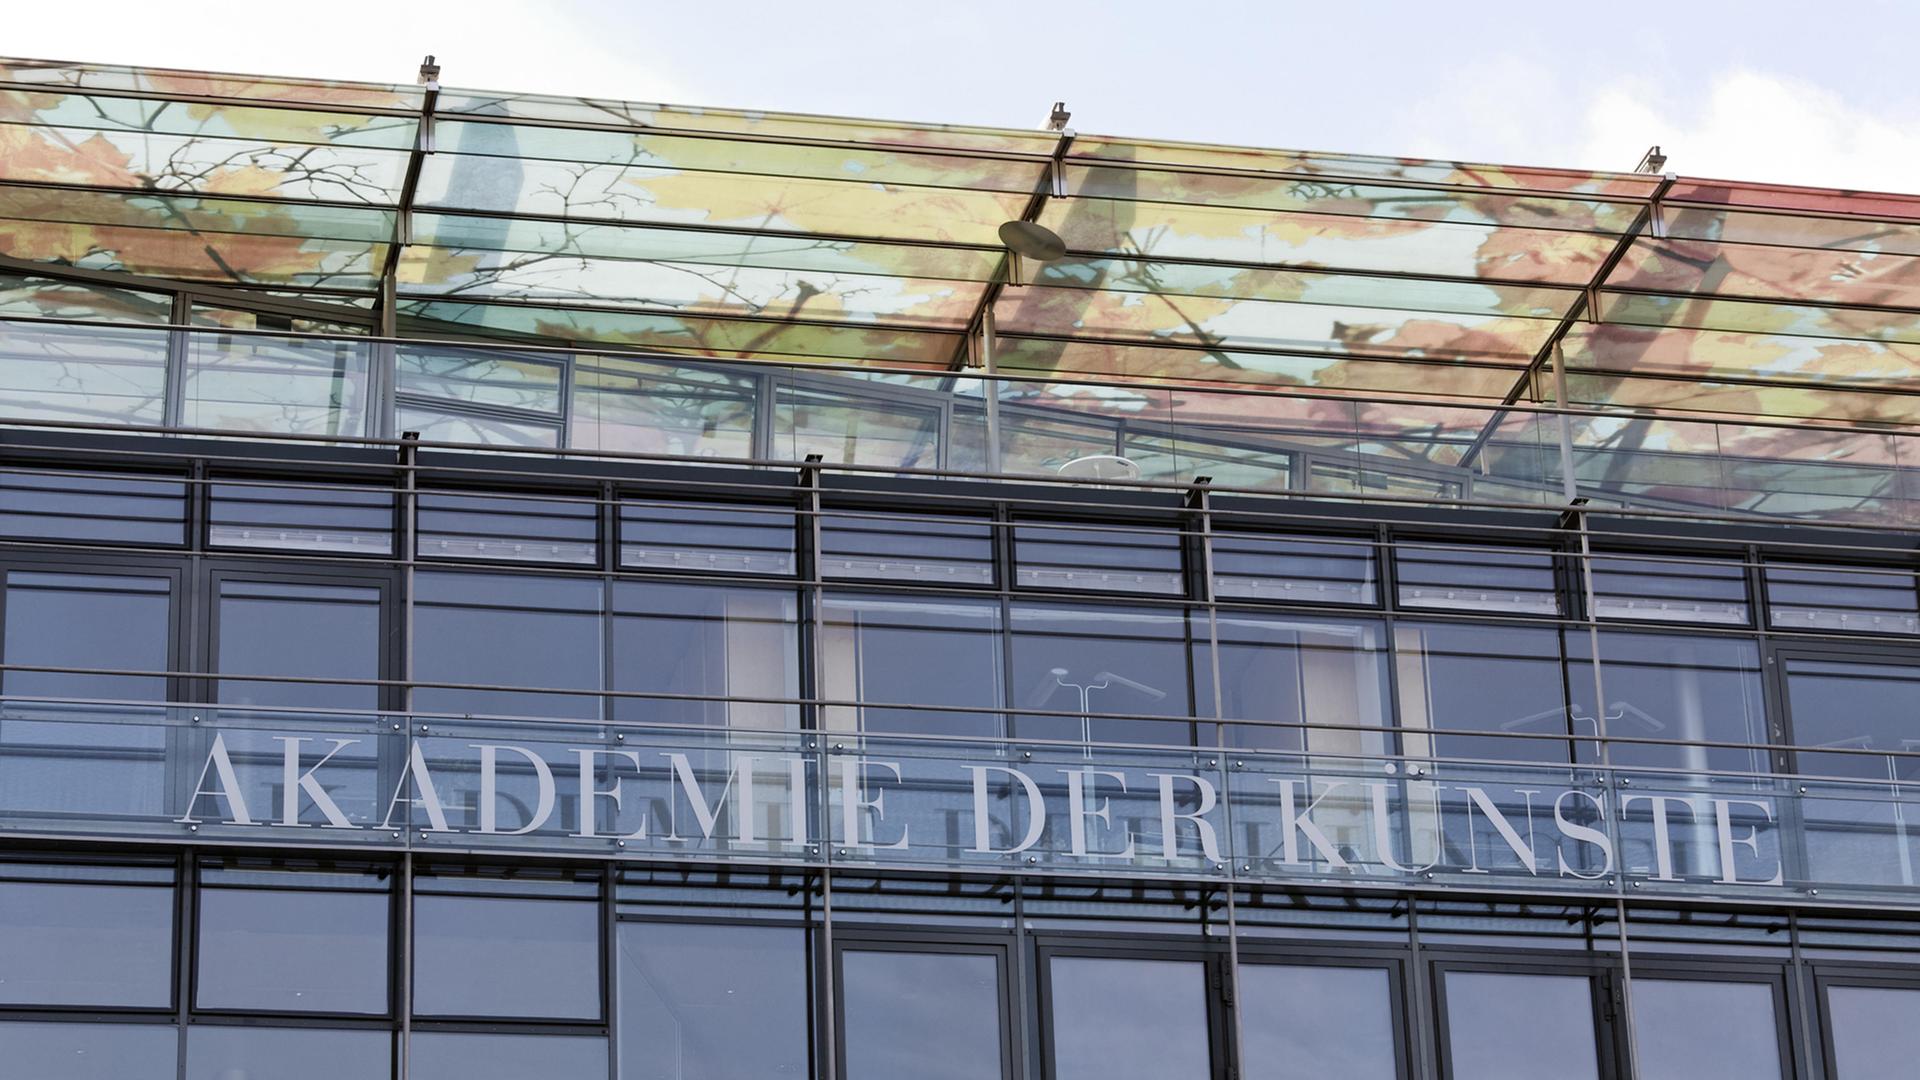 Blick auf die Akademie der Künste in Berlin